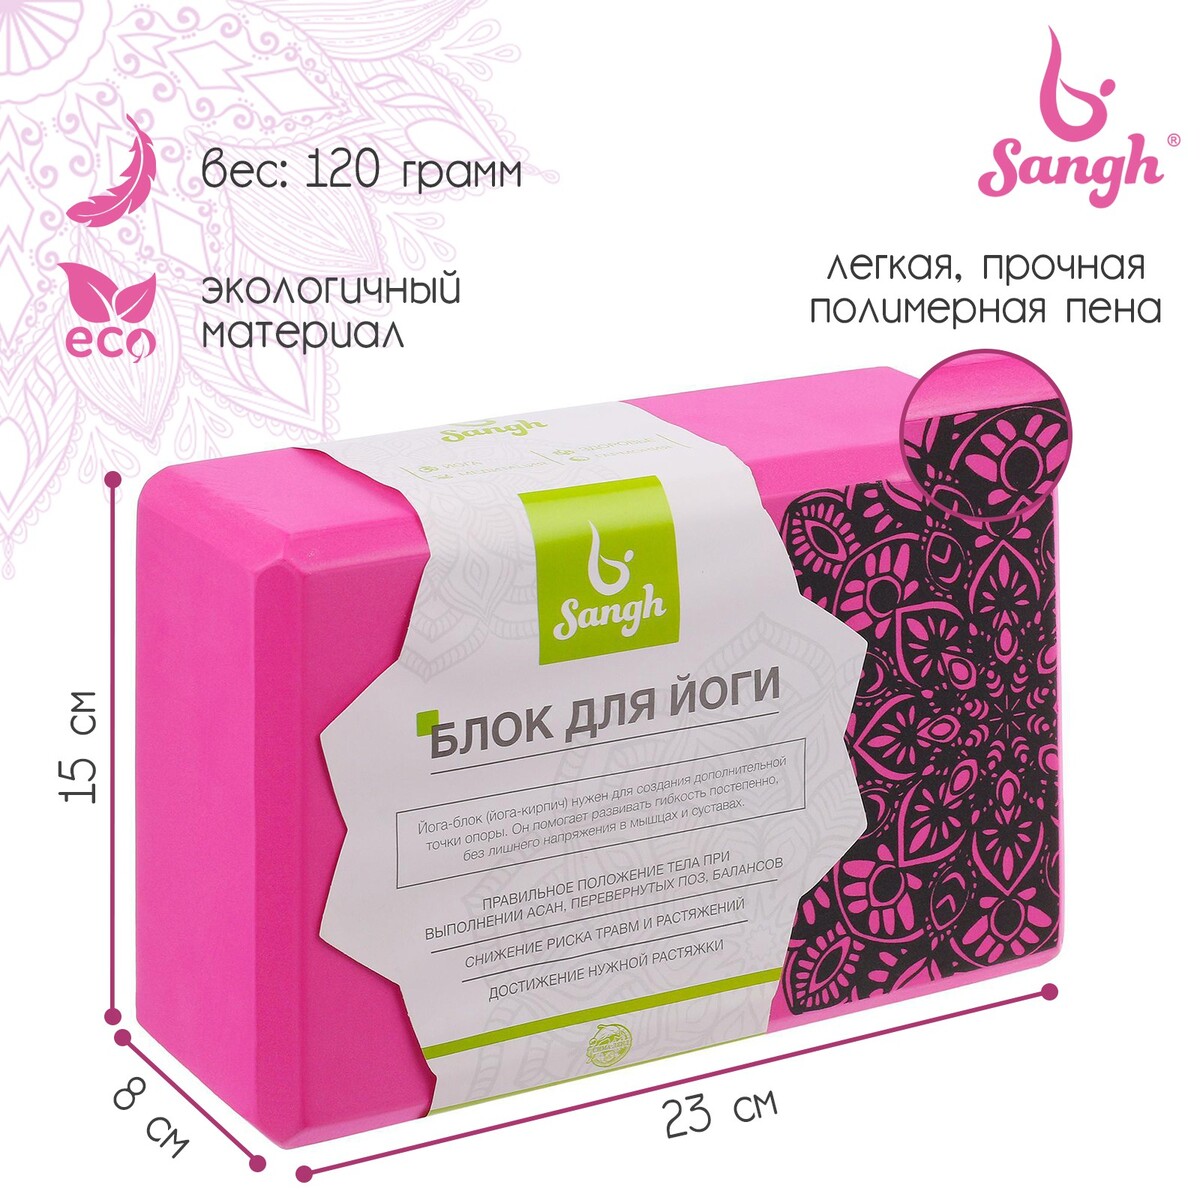 Блок для йоги sangh, 23×15×8, цвет розовый блок для йоги airex eco cork block aa yogaecocb